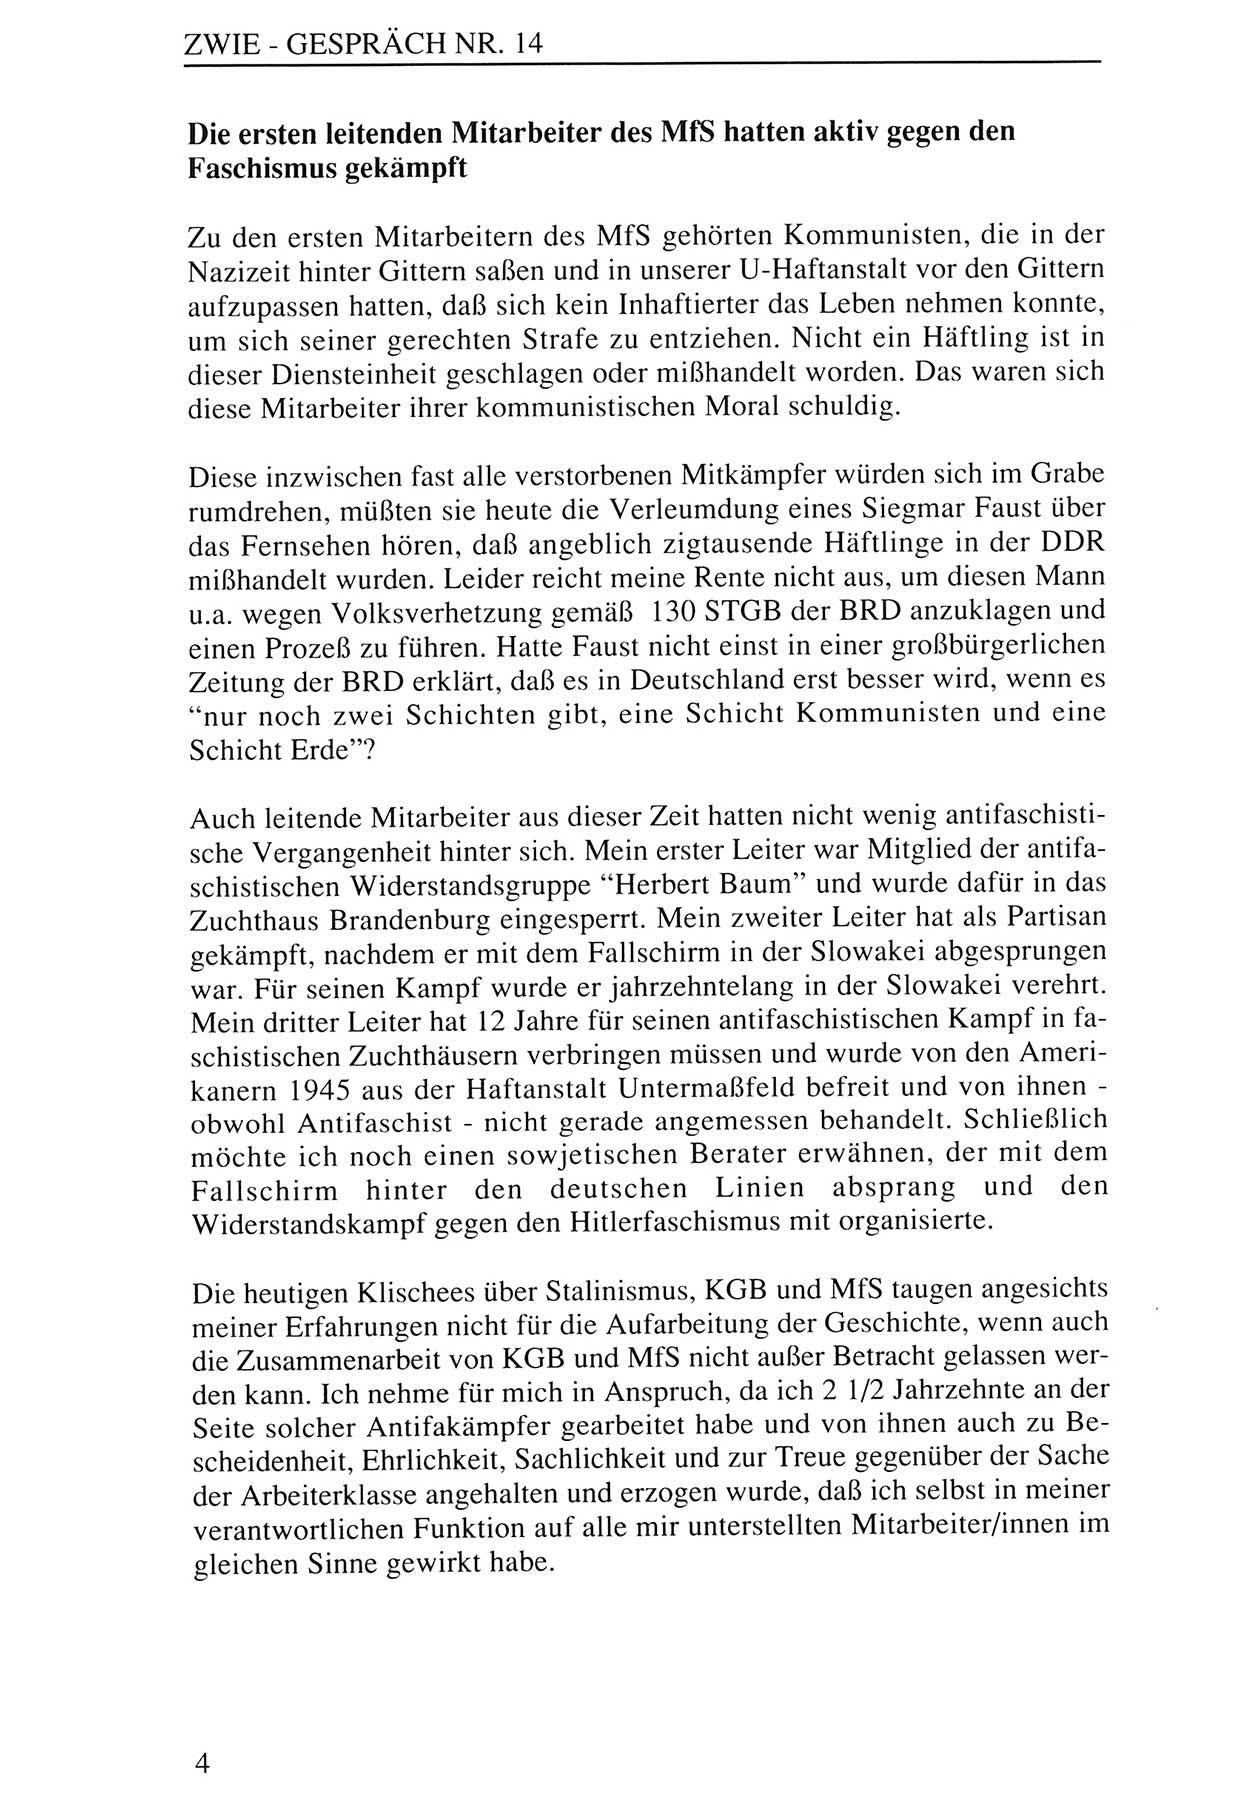 Zwie-Gespräch, Beiträge zur Aufarbeitung der Staatssicherheits-Vergangenheit [Deutsche Demokratische Republik (DDR)], Ausgabe Nr. 14, Berlin 1993, Seite 4 (Zwie-Gespr. Ausg. 14 1993, S. 4)